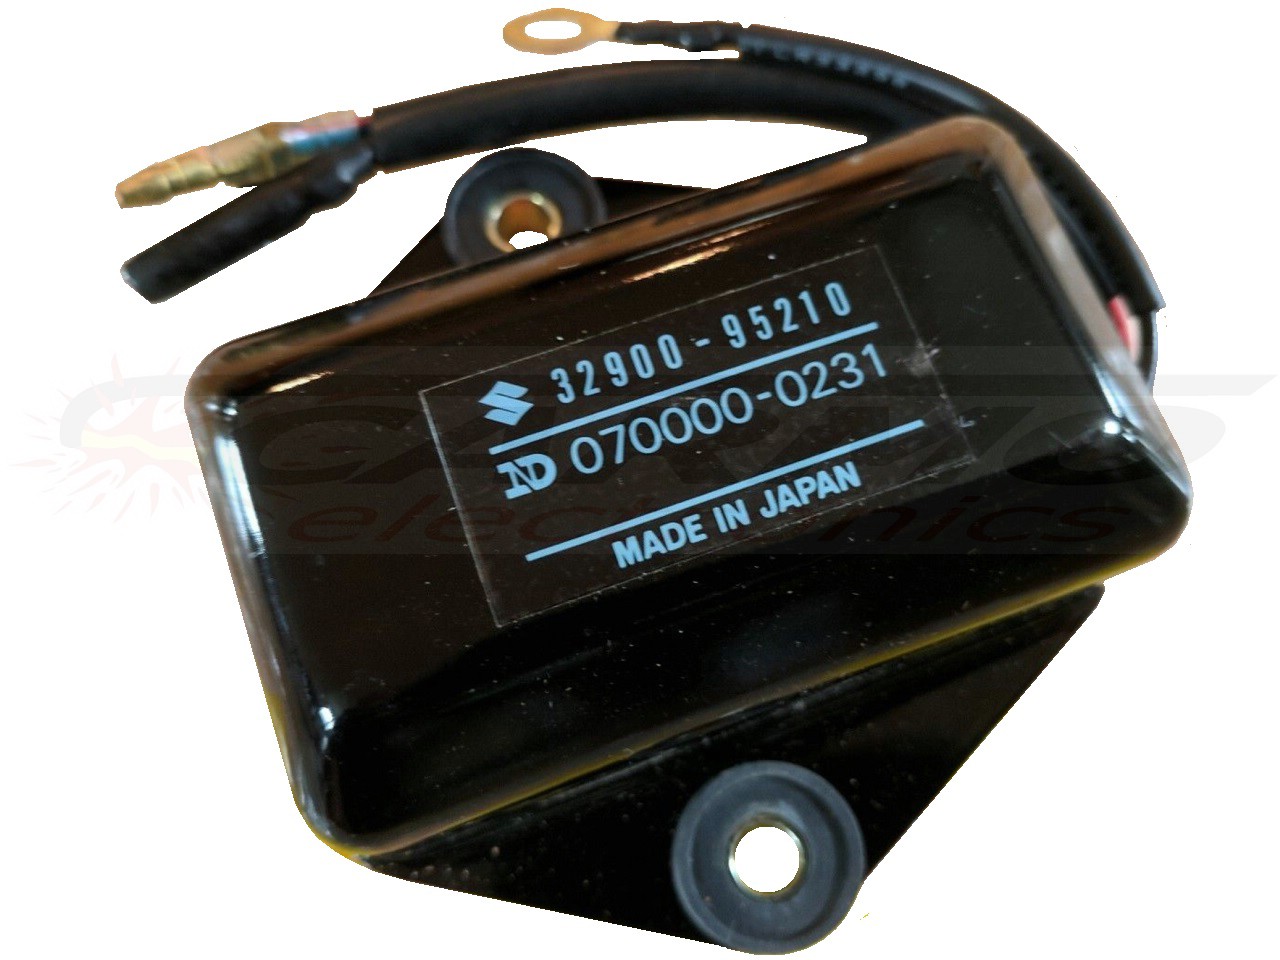 DT20 - DT65 unidade CDI Ignição ECU (32900-95210, 070000-0231)